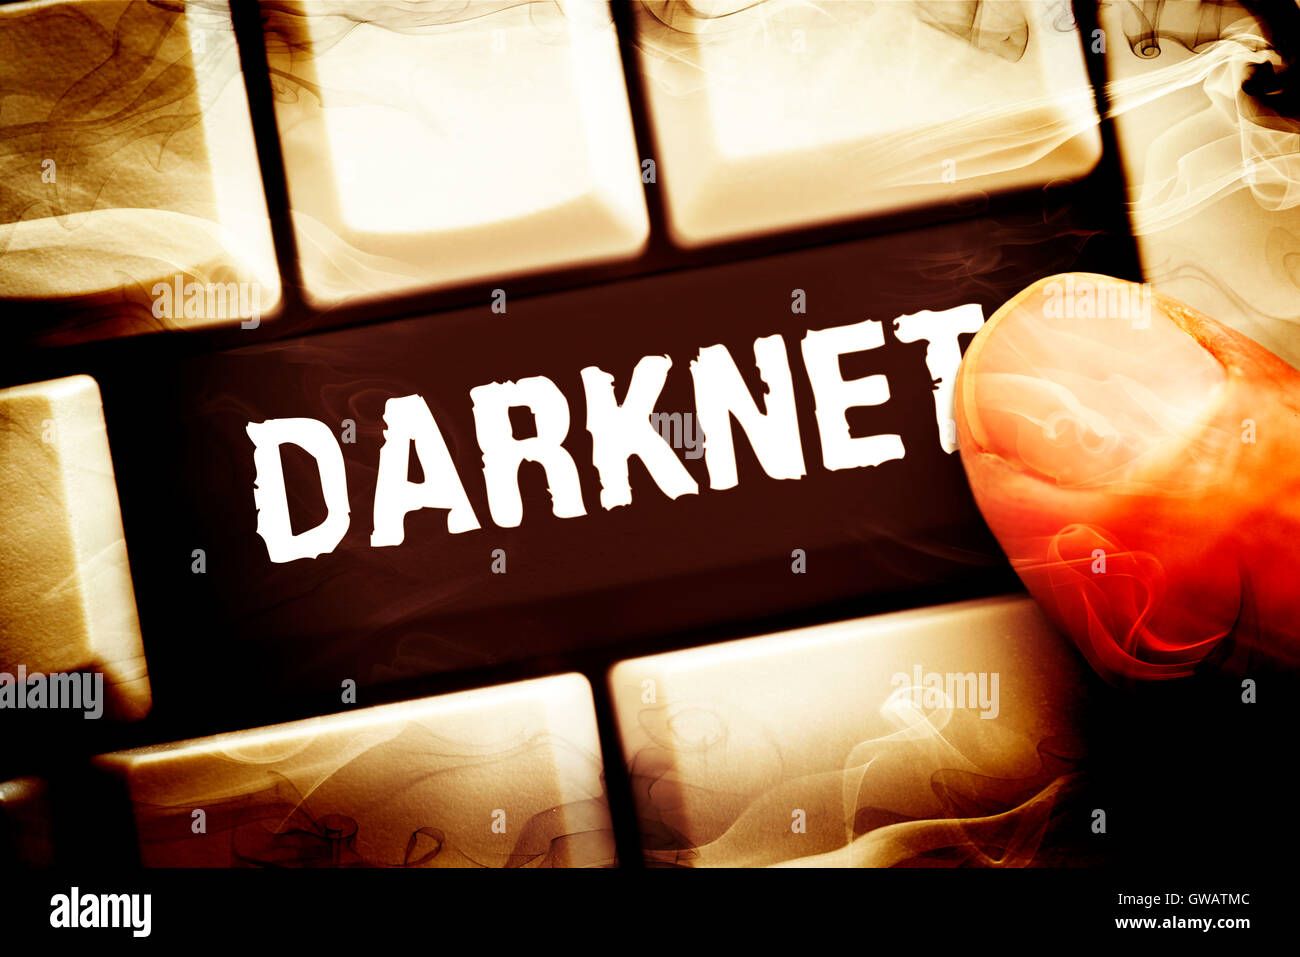 Chiave del computer con l'etichetta Darknet, Computertaste mit der Aufschrift Darknet Foto Stock